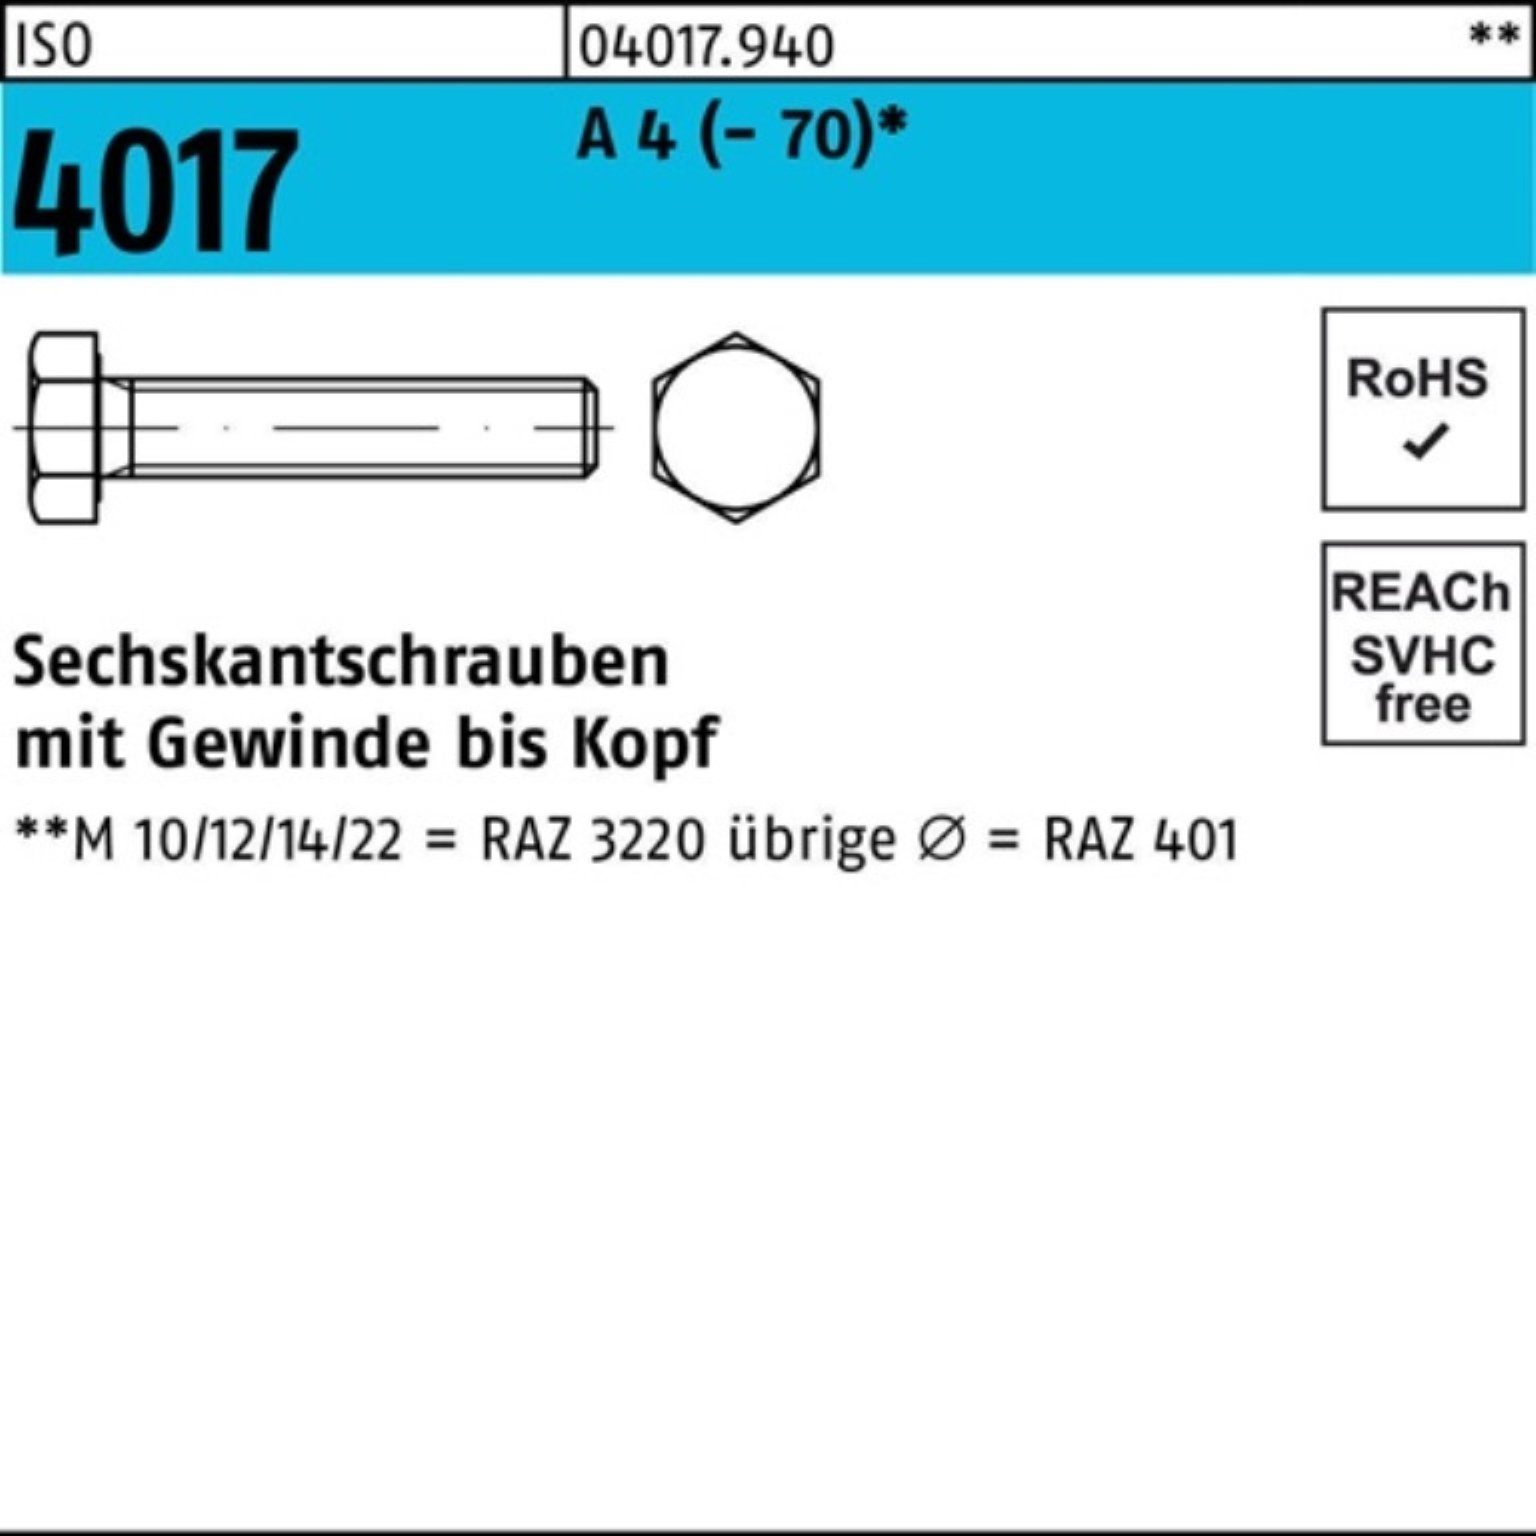 Stück 45 Bufab A Sechskantschraube Pack 4017 4 M12x ISO VG (70) 100 100er Sechskantschraube